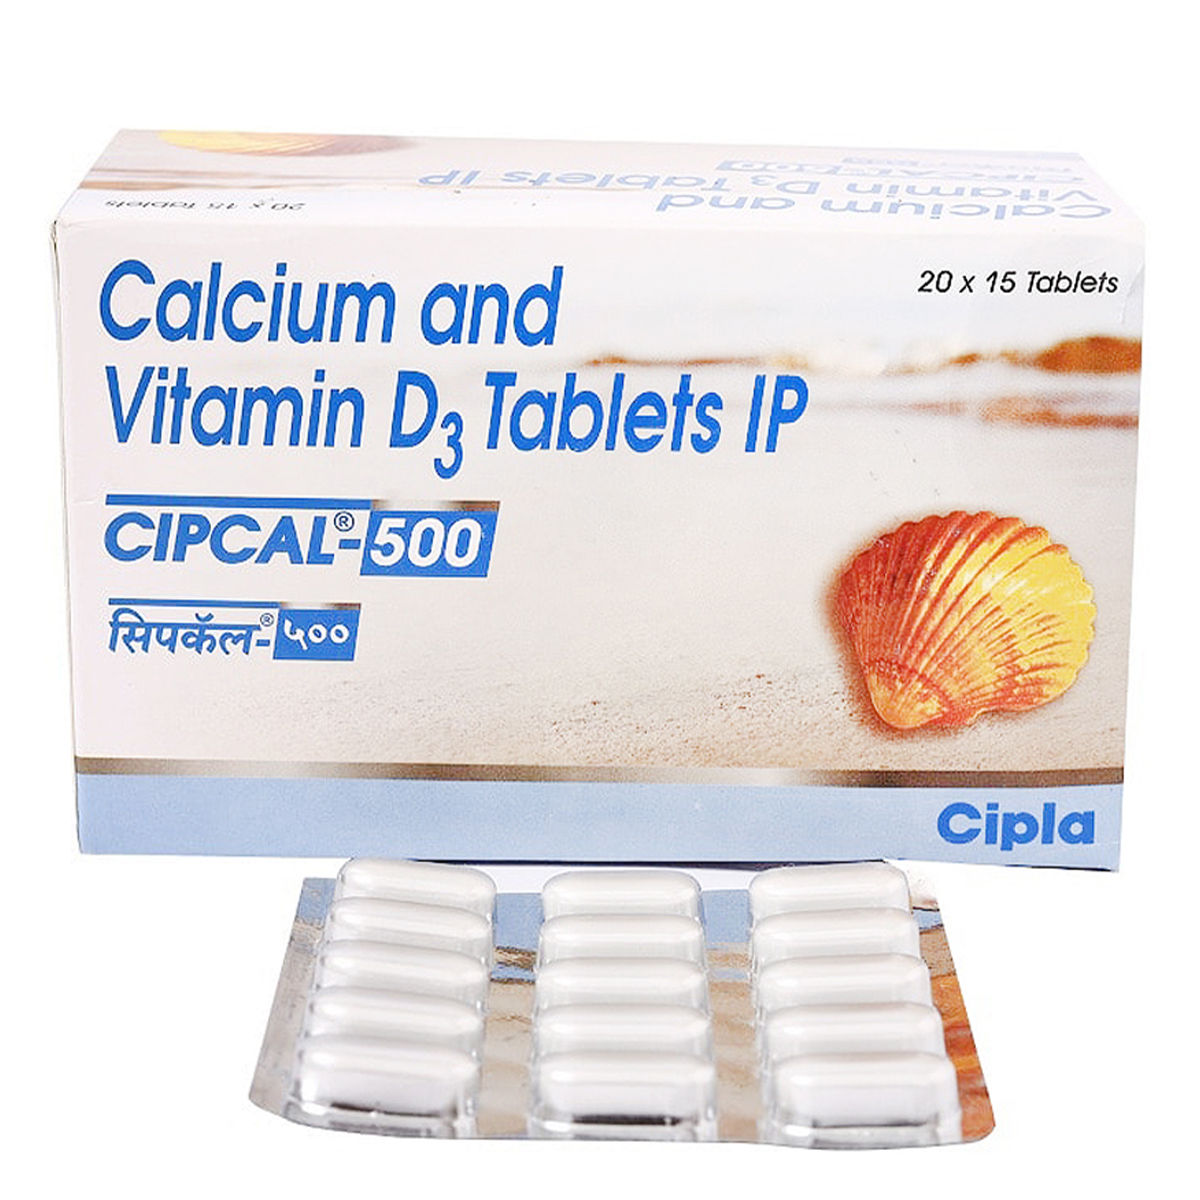 cipla 500 calcium with vitamin d3